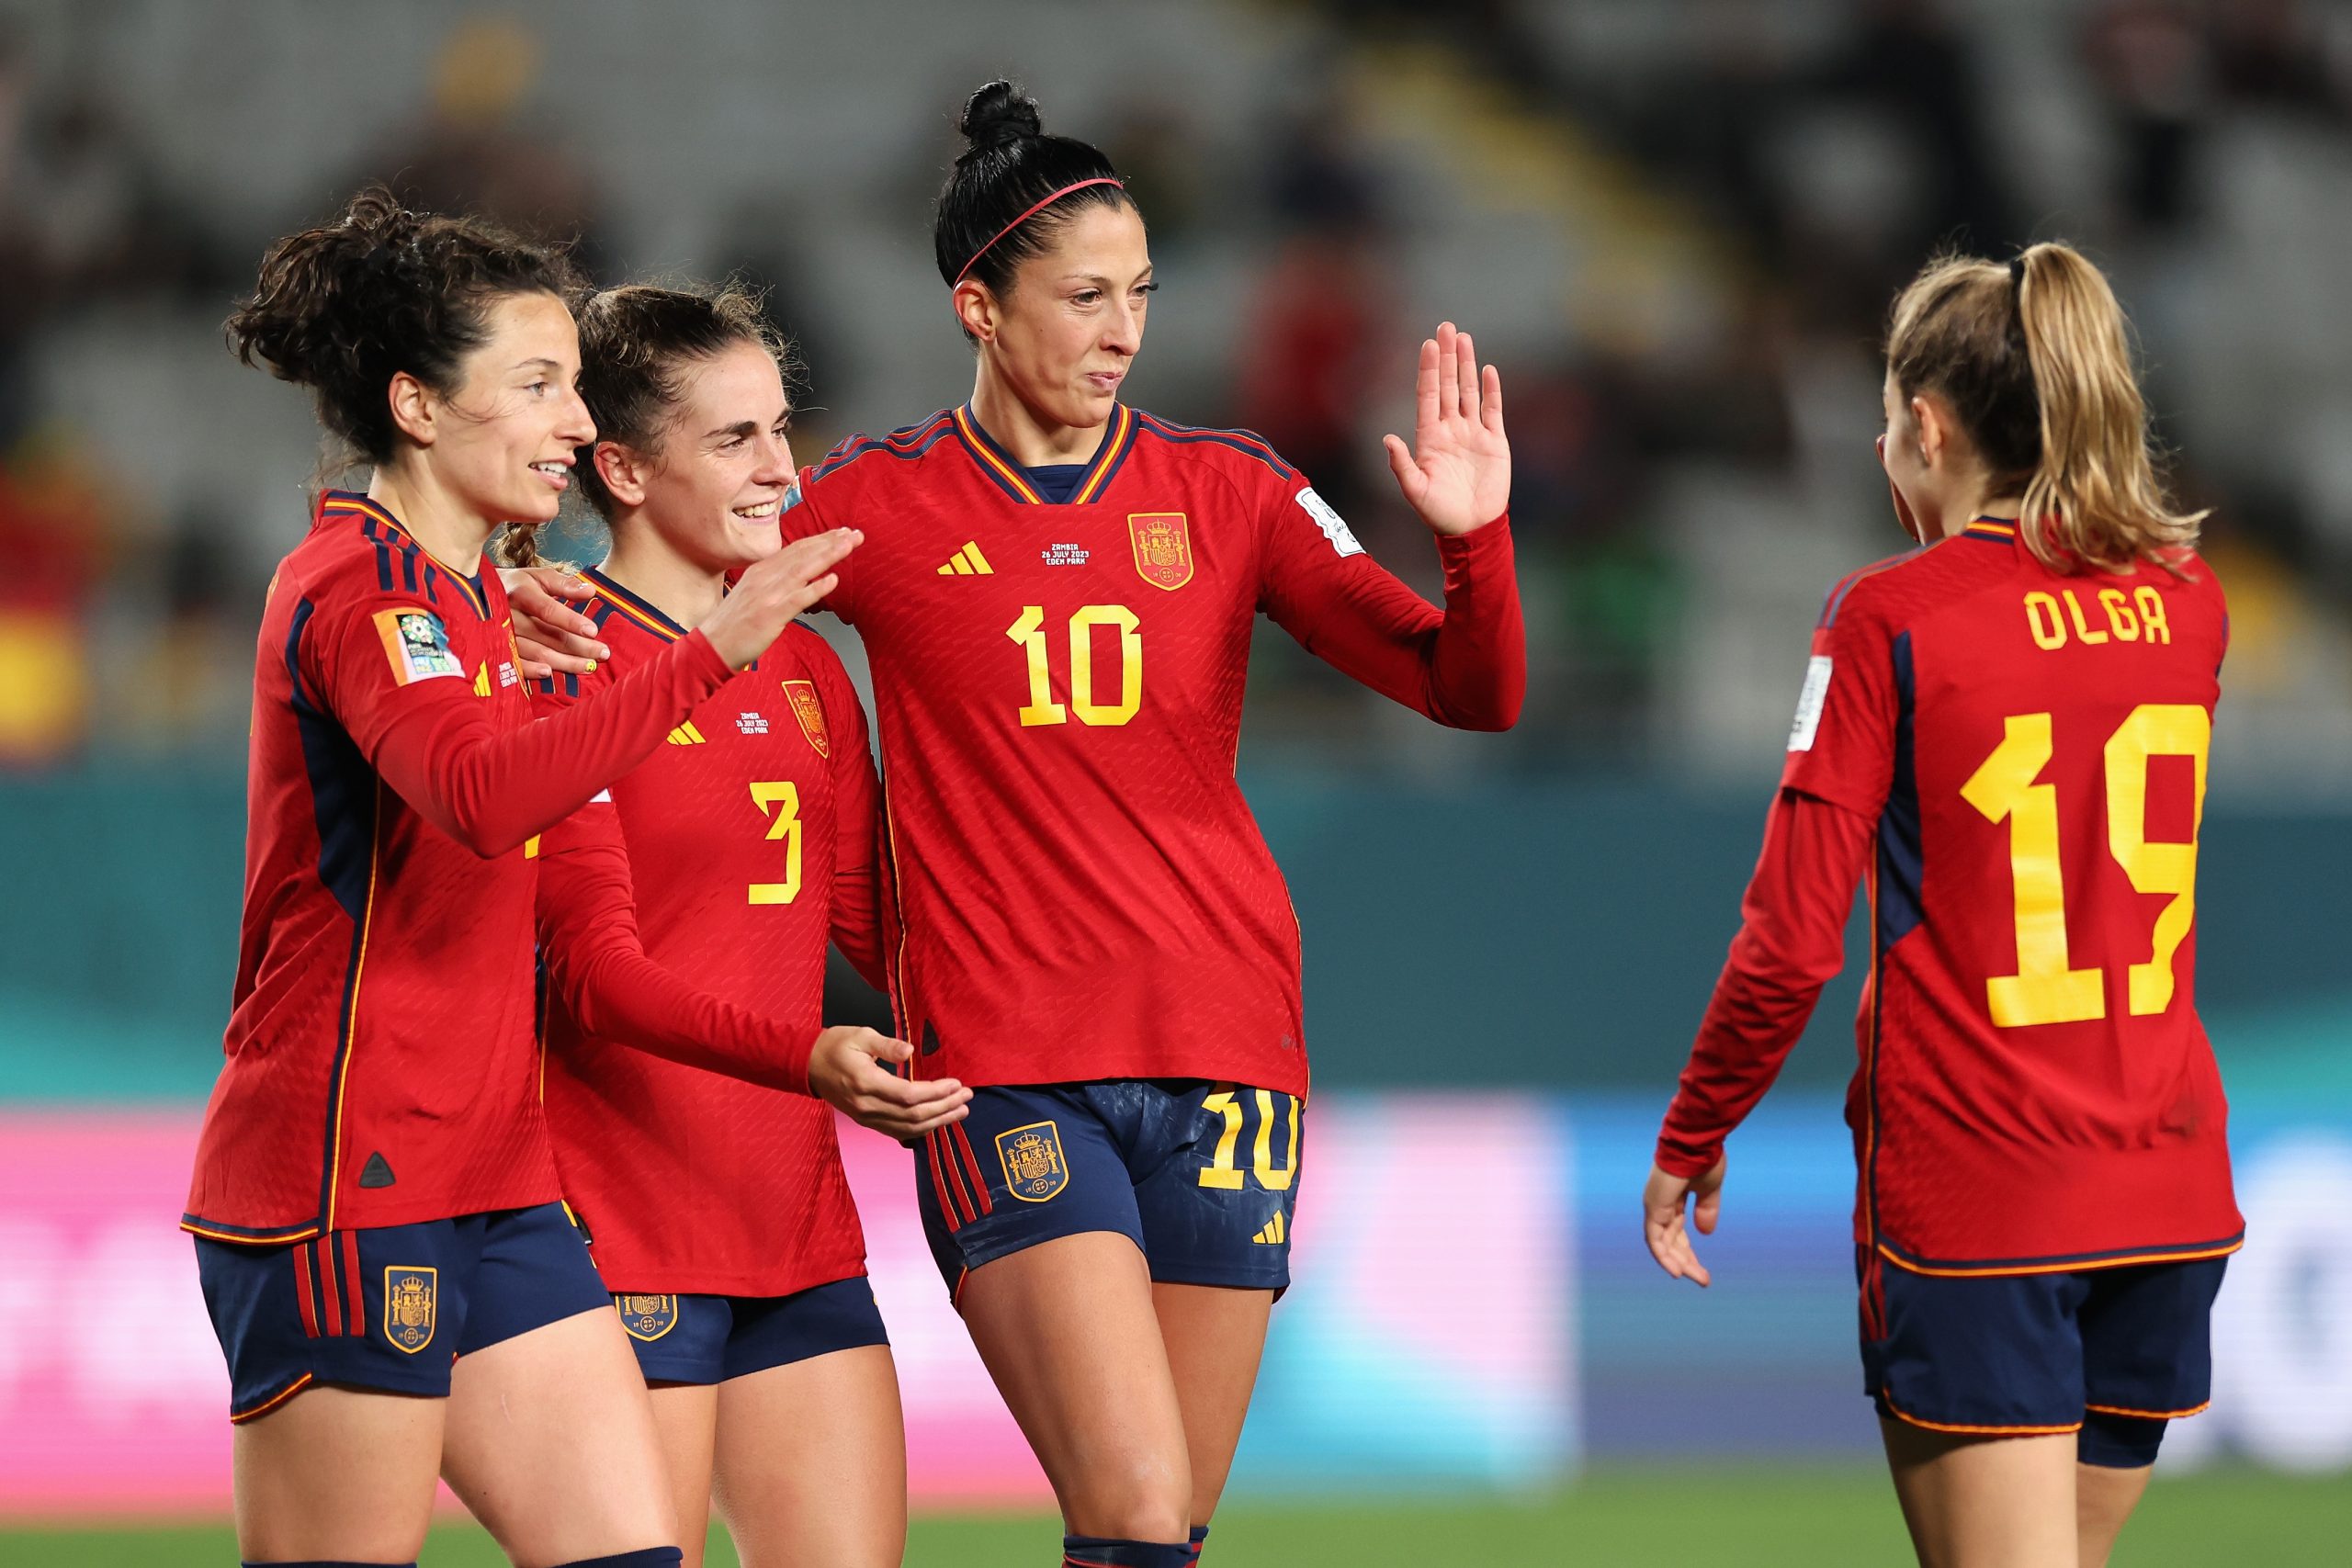 Copa do Mundo: Espanha goleia Costa Rica por 7 a 0